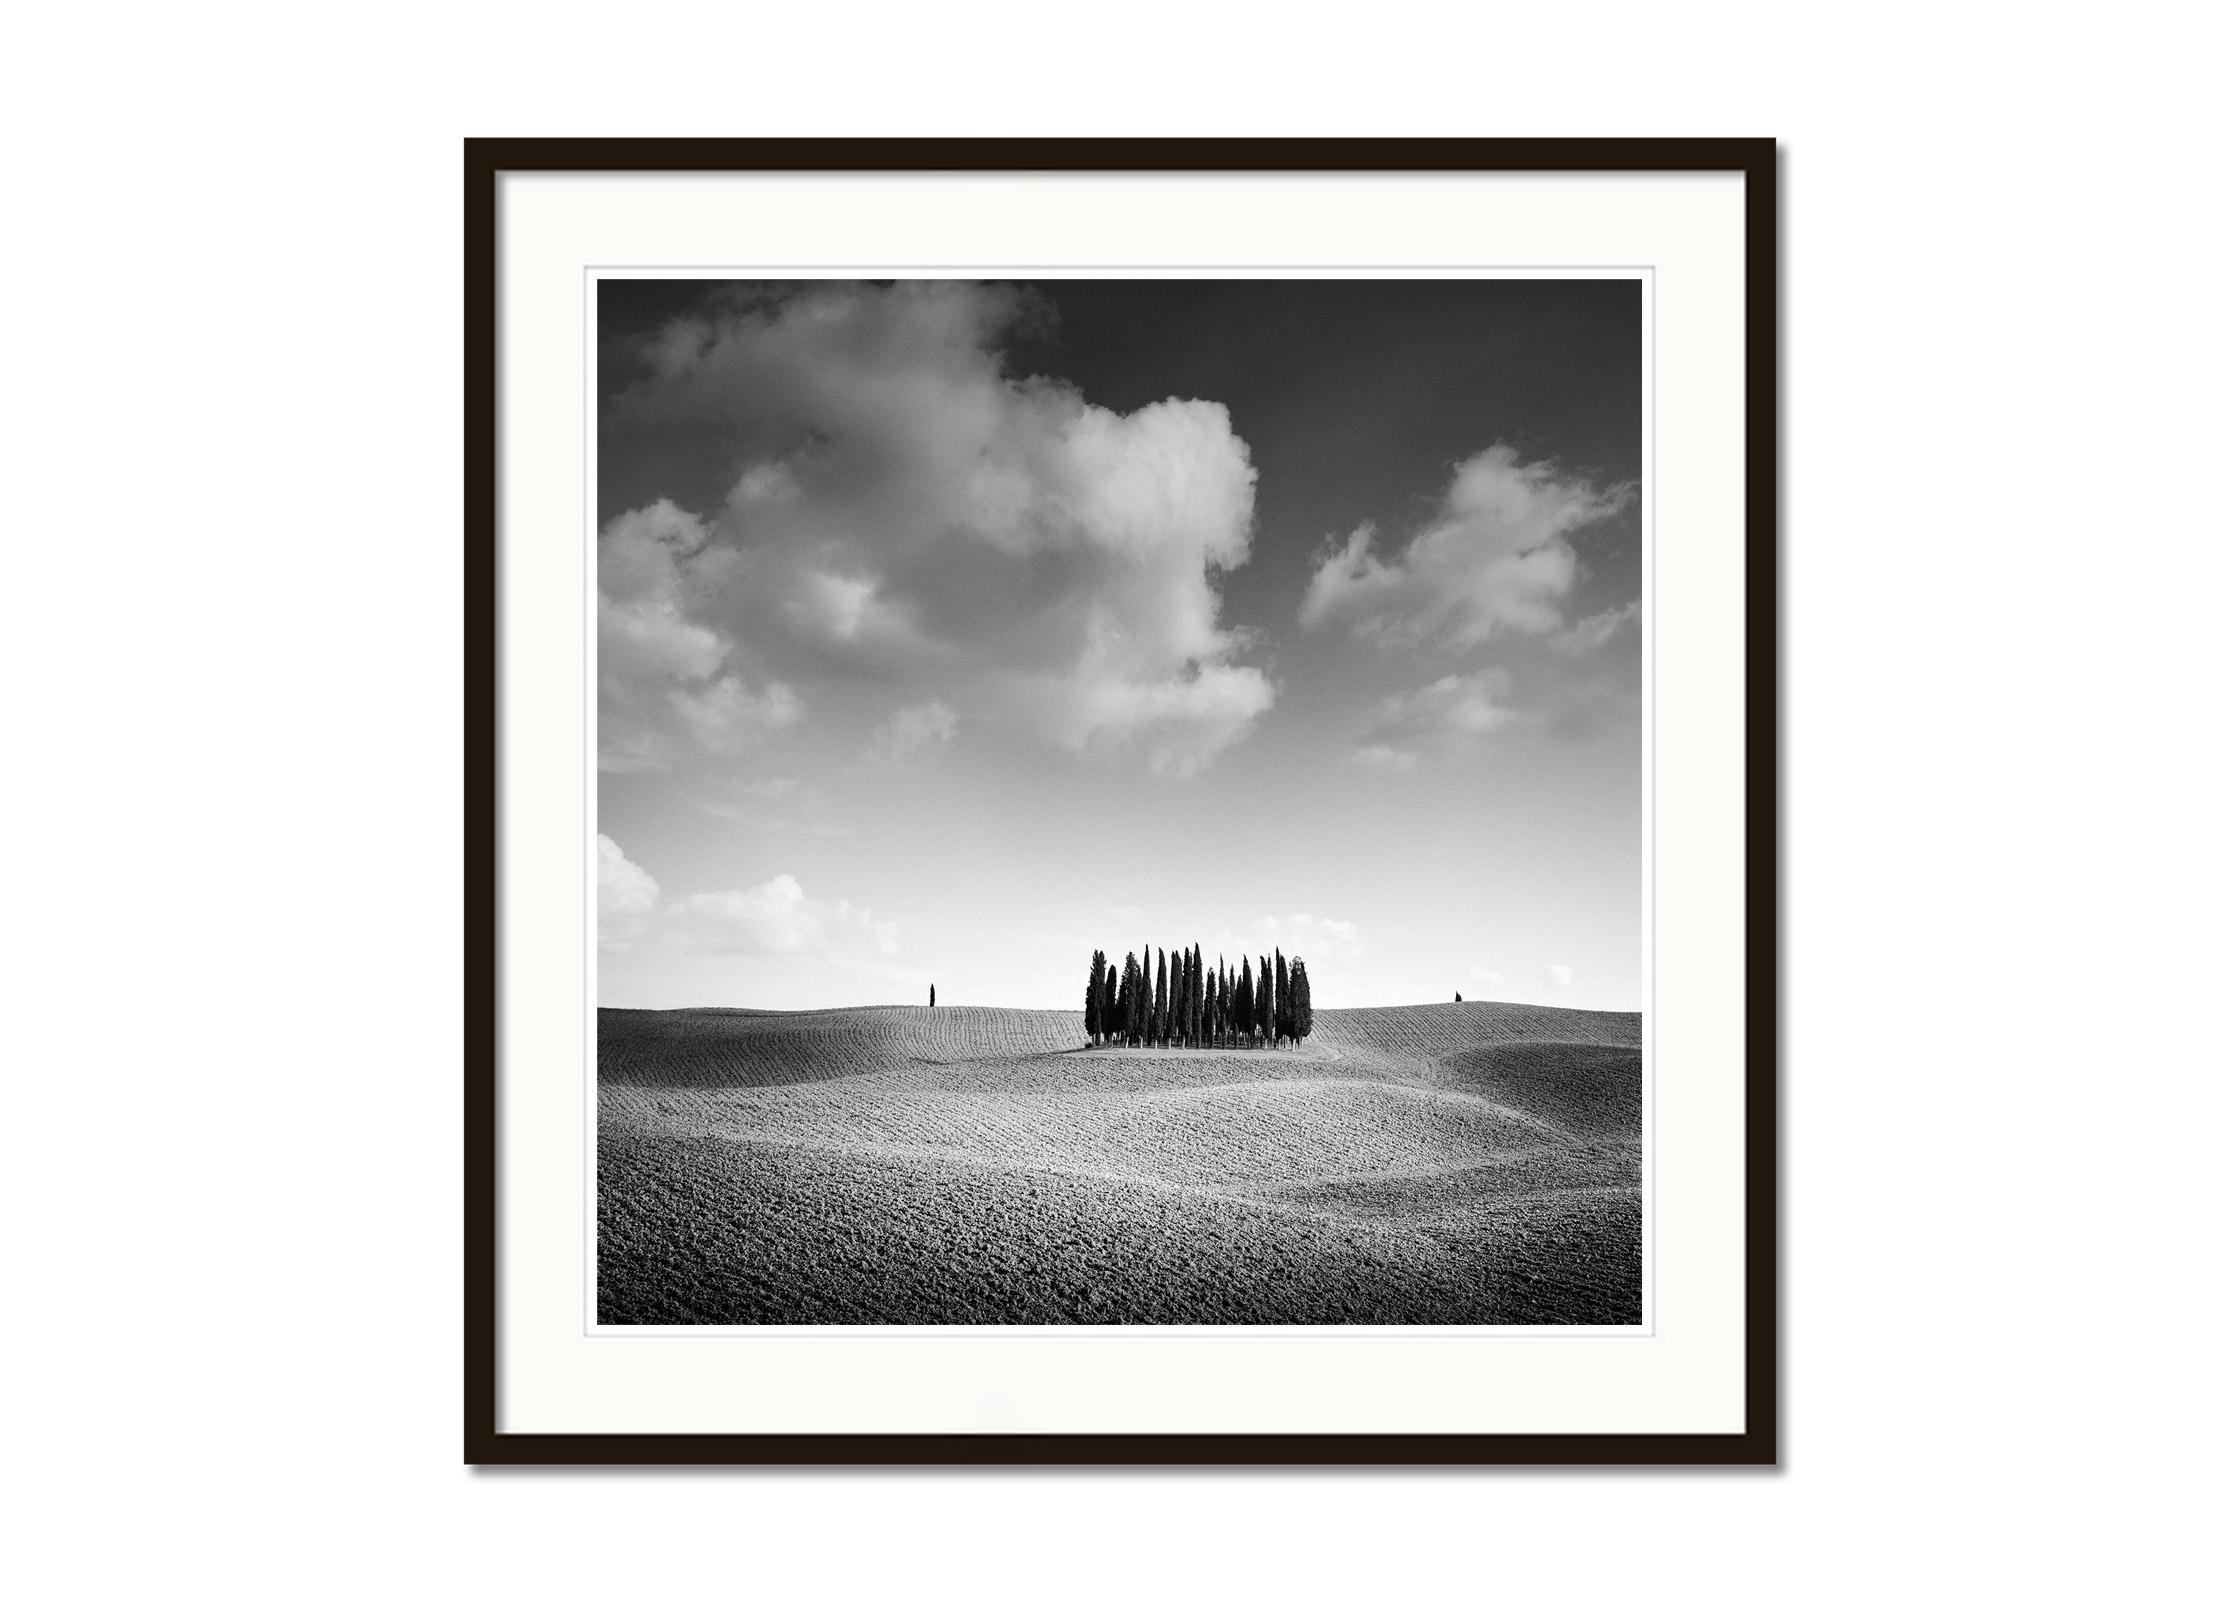   Cypress Hill, Toskana, Italien, minimalistische Schwarz-Weiß-Fotografie, Landschaft (Grau), Black and White Photograph, von Gerald Berghammer